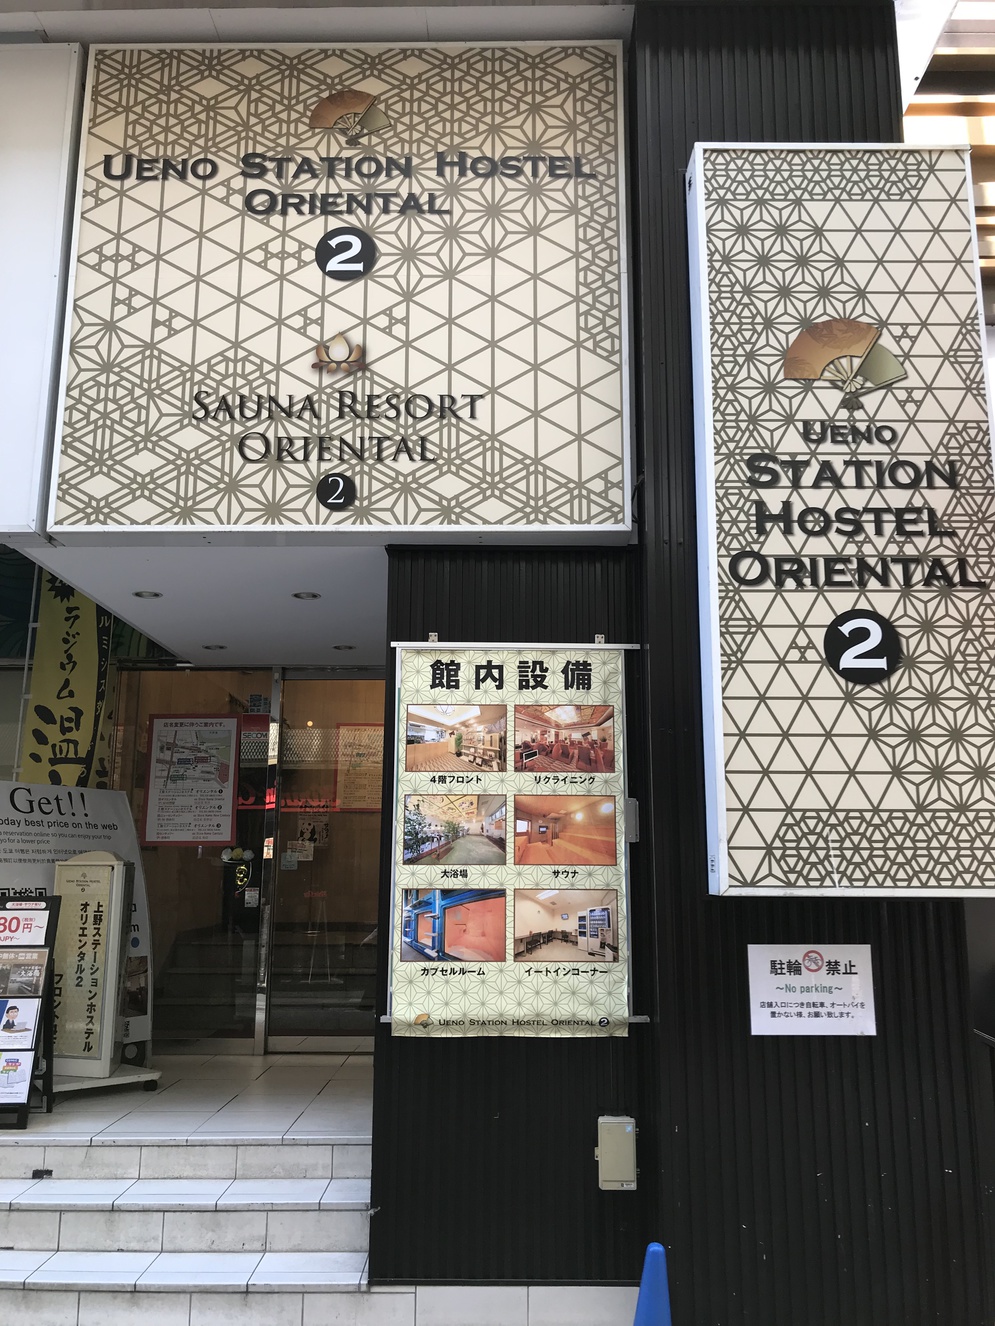 上野站東方 2 號青年旅館